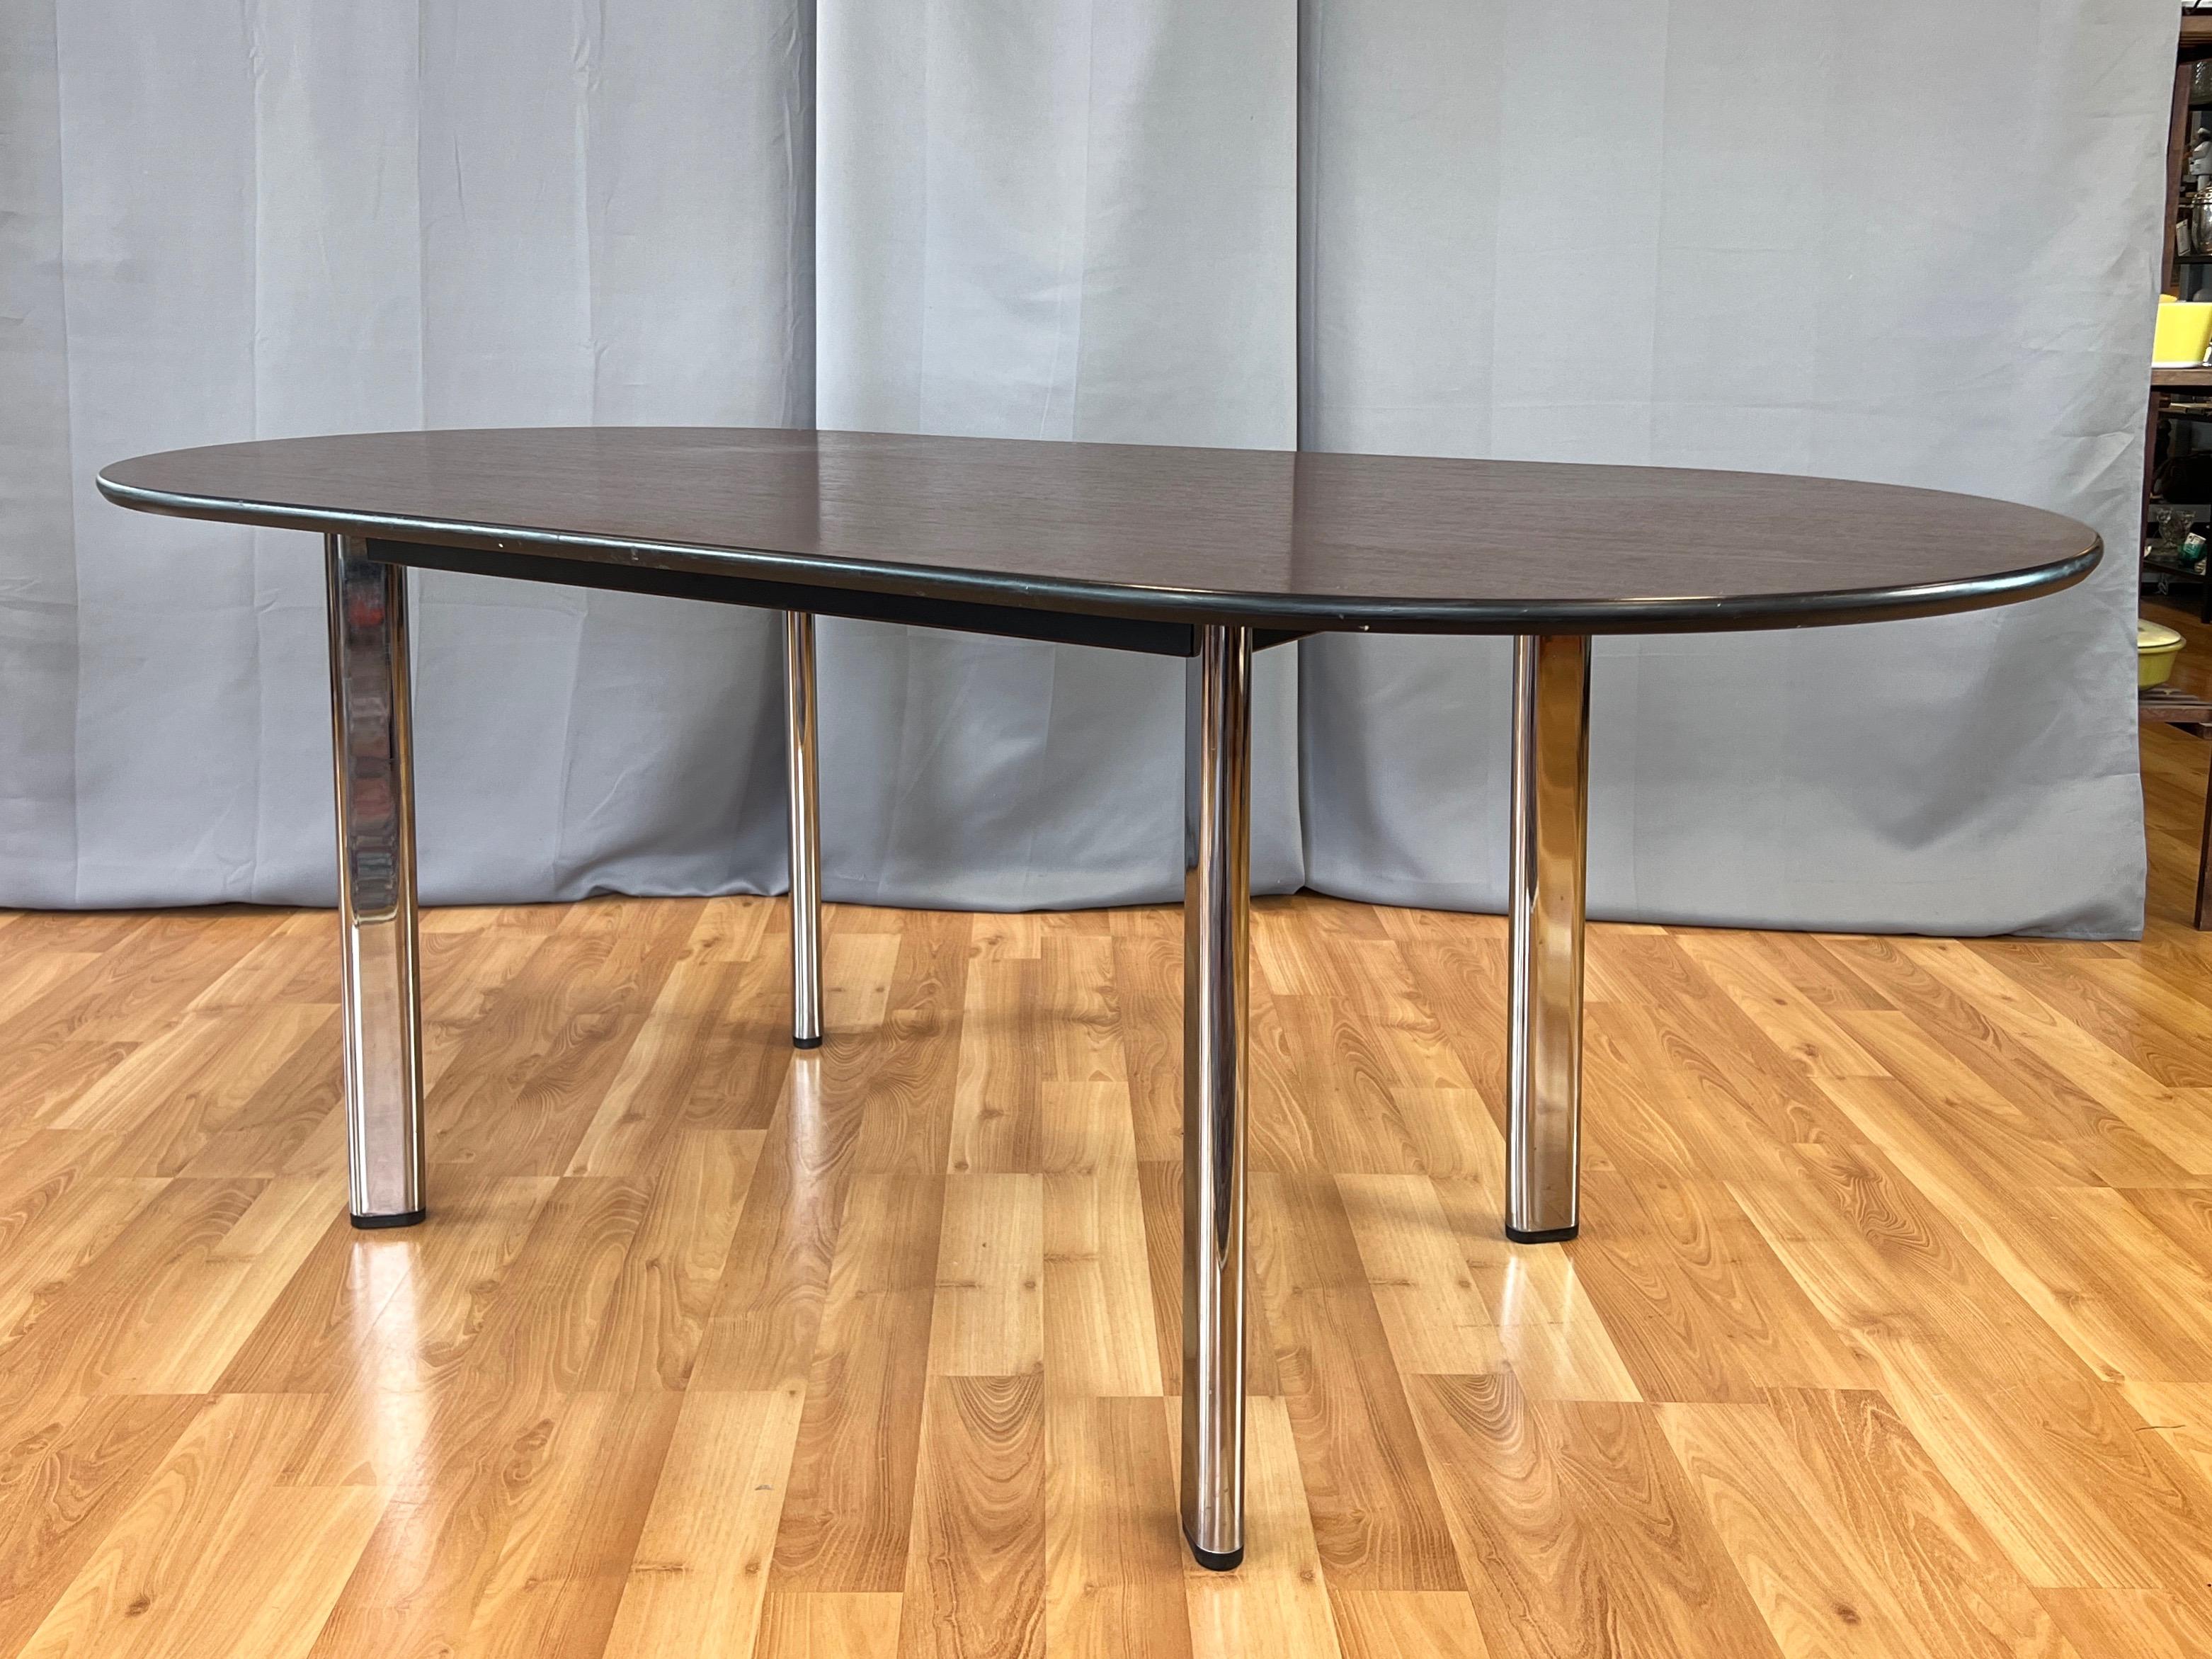 Eine Produktion von 1995 des minimalistischen High Table von Joe D'Urso aus dem Jahr 1980 für Knoll mit einer Platte aus amerikanischer Kirsche und verchromten Beinen.

Die Oberseite besteht aus einer schönen Fläche aus reichlich getöntem und fein